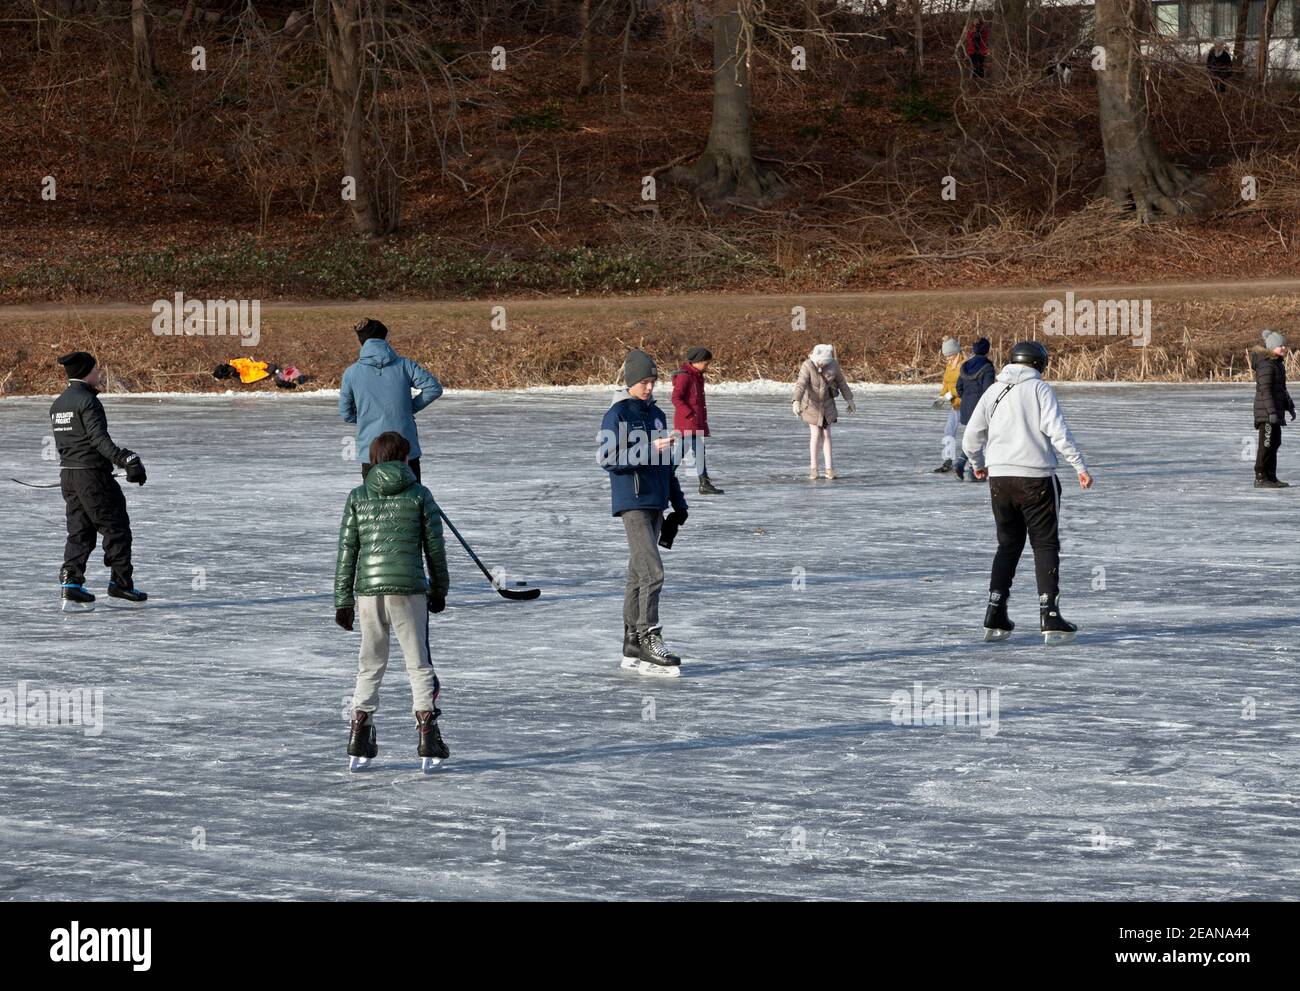 Palace Lake, Slotssøen, Dinamarca está abierto para el patinaje por primera vez desde 2012. Realmente un éxito para niños y adultos en el período de cierre de Corona Foto de stock